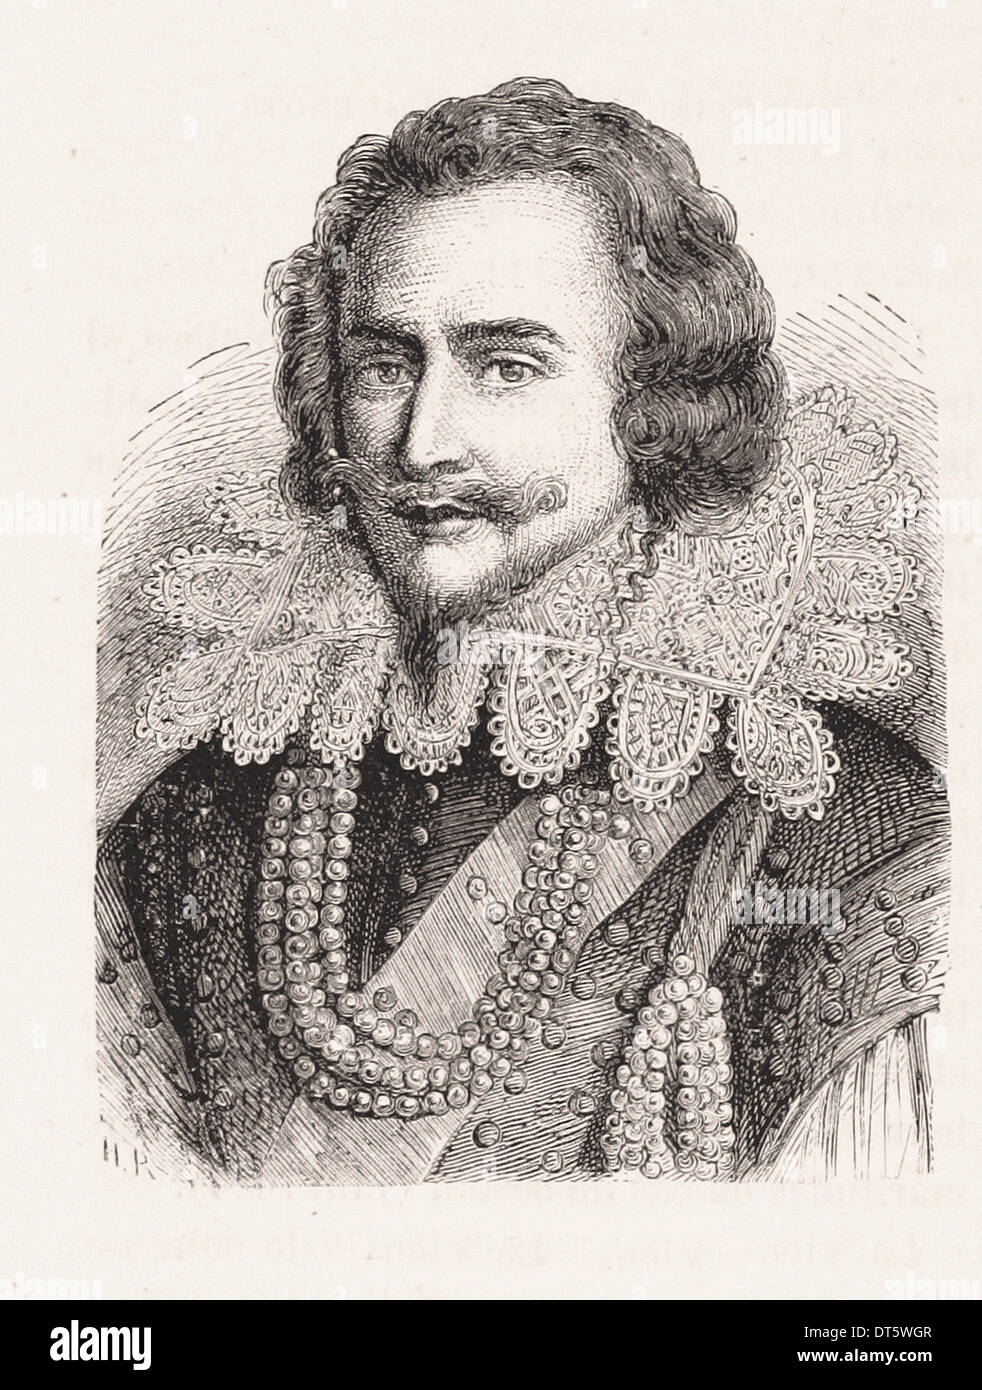 Porträt des Herzogs von Buckingham - Gravur XIX Jahrhundert Französisch Stockfoto